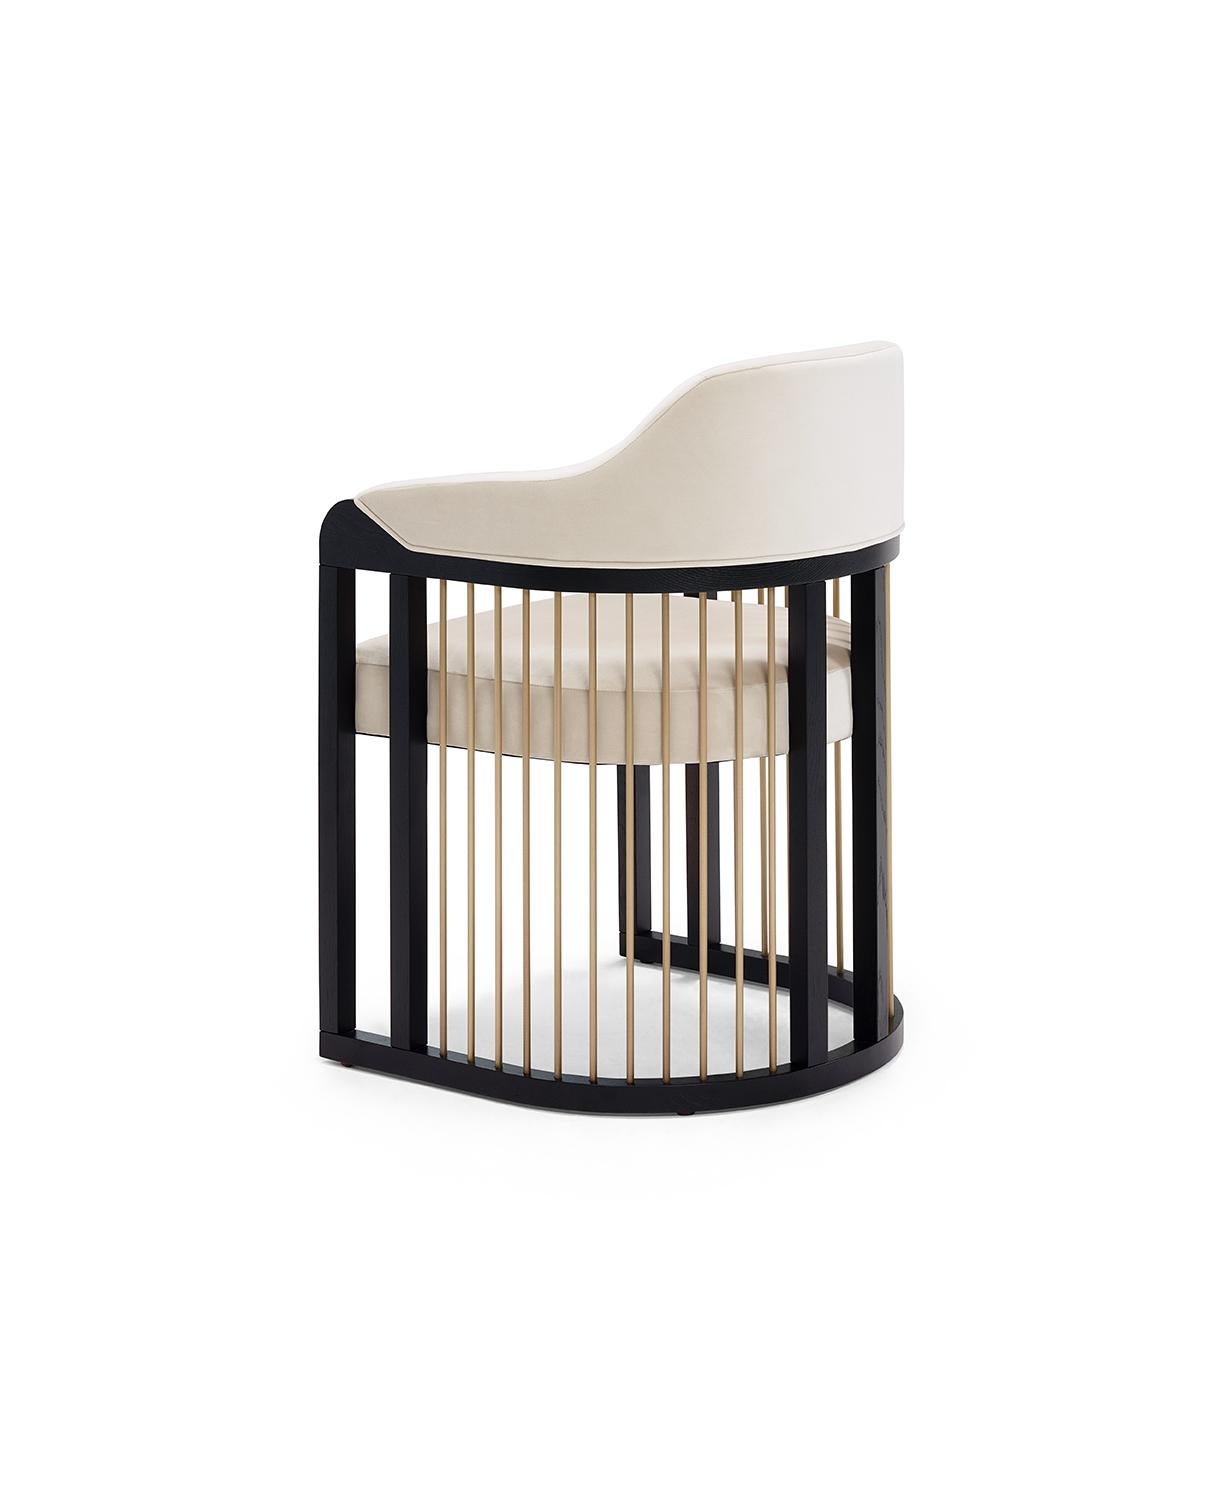 Der raffinierte Charakter des Stuhls GRACE Urban entsteht durch die Kombination der unterschiedlichsten Materialien, vom Holz bis hin zu den Stoffstrukturen und den metallischen Details, die auf eine ganz besondere und elegante Weise Gestalt